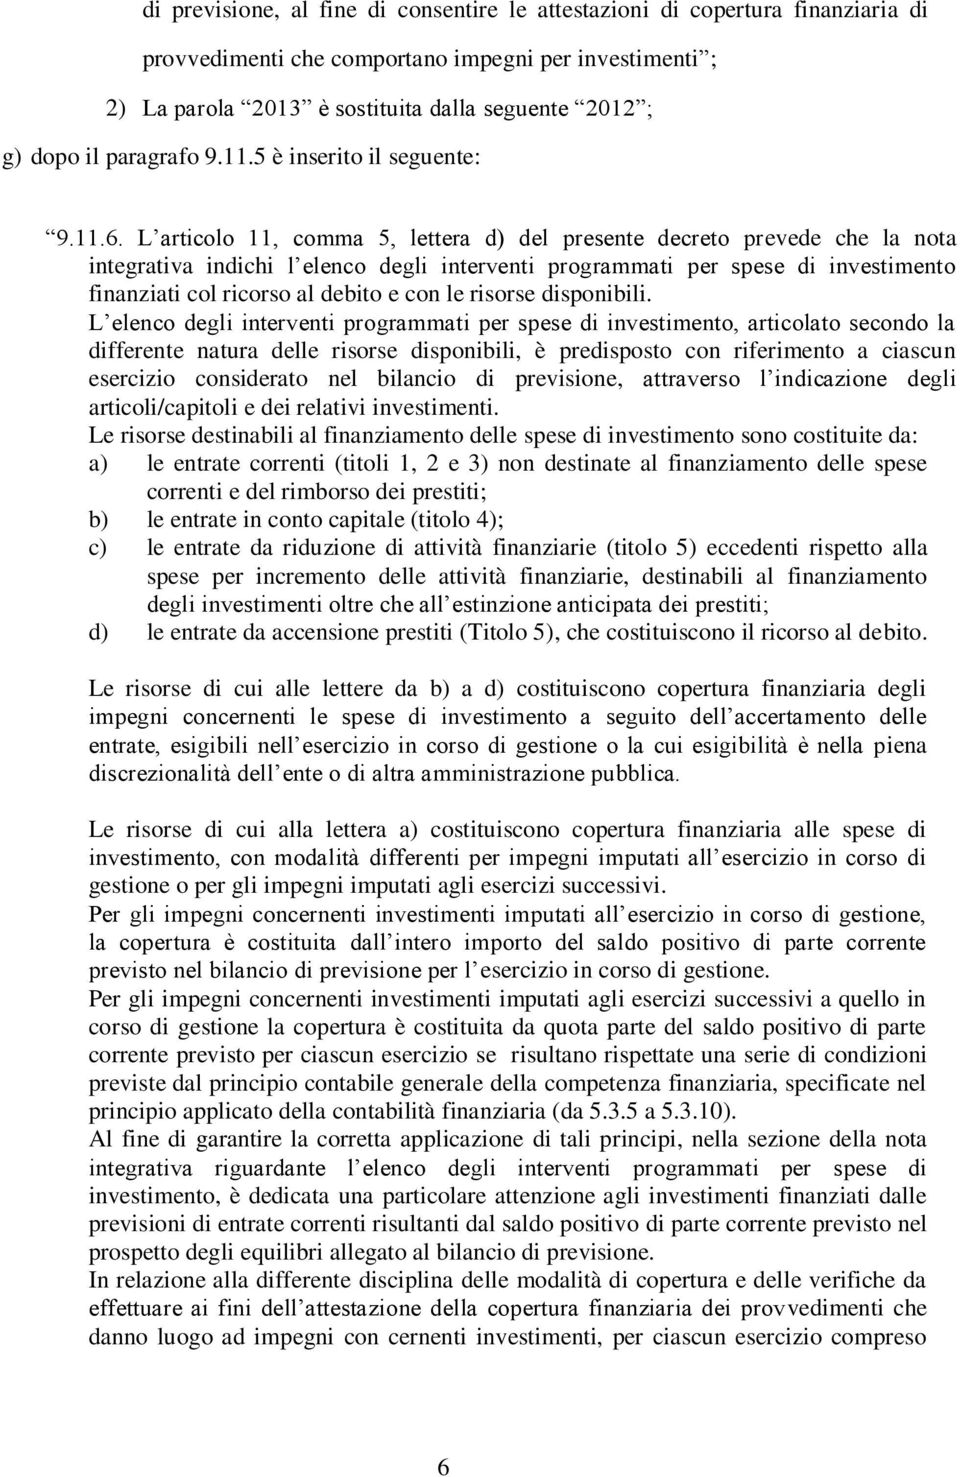 L articolo 11, comma 5, lettera d) del presente decreto prevede che la nota integrativa indichi l elenco degli interventi programmati per spese di investimento finanziati col ricorso al debito e con